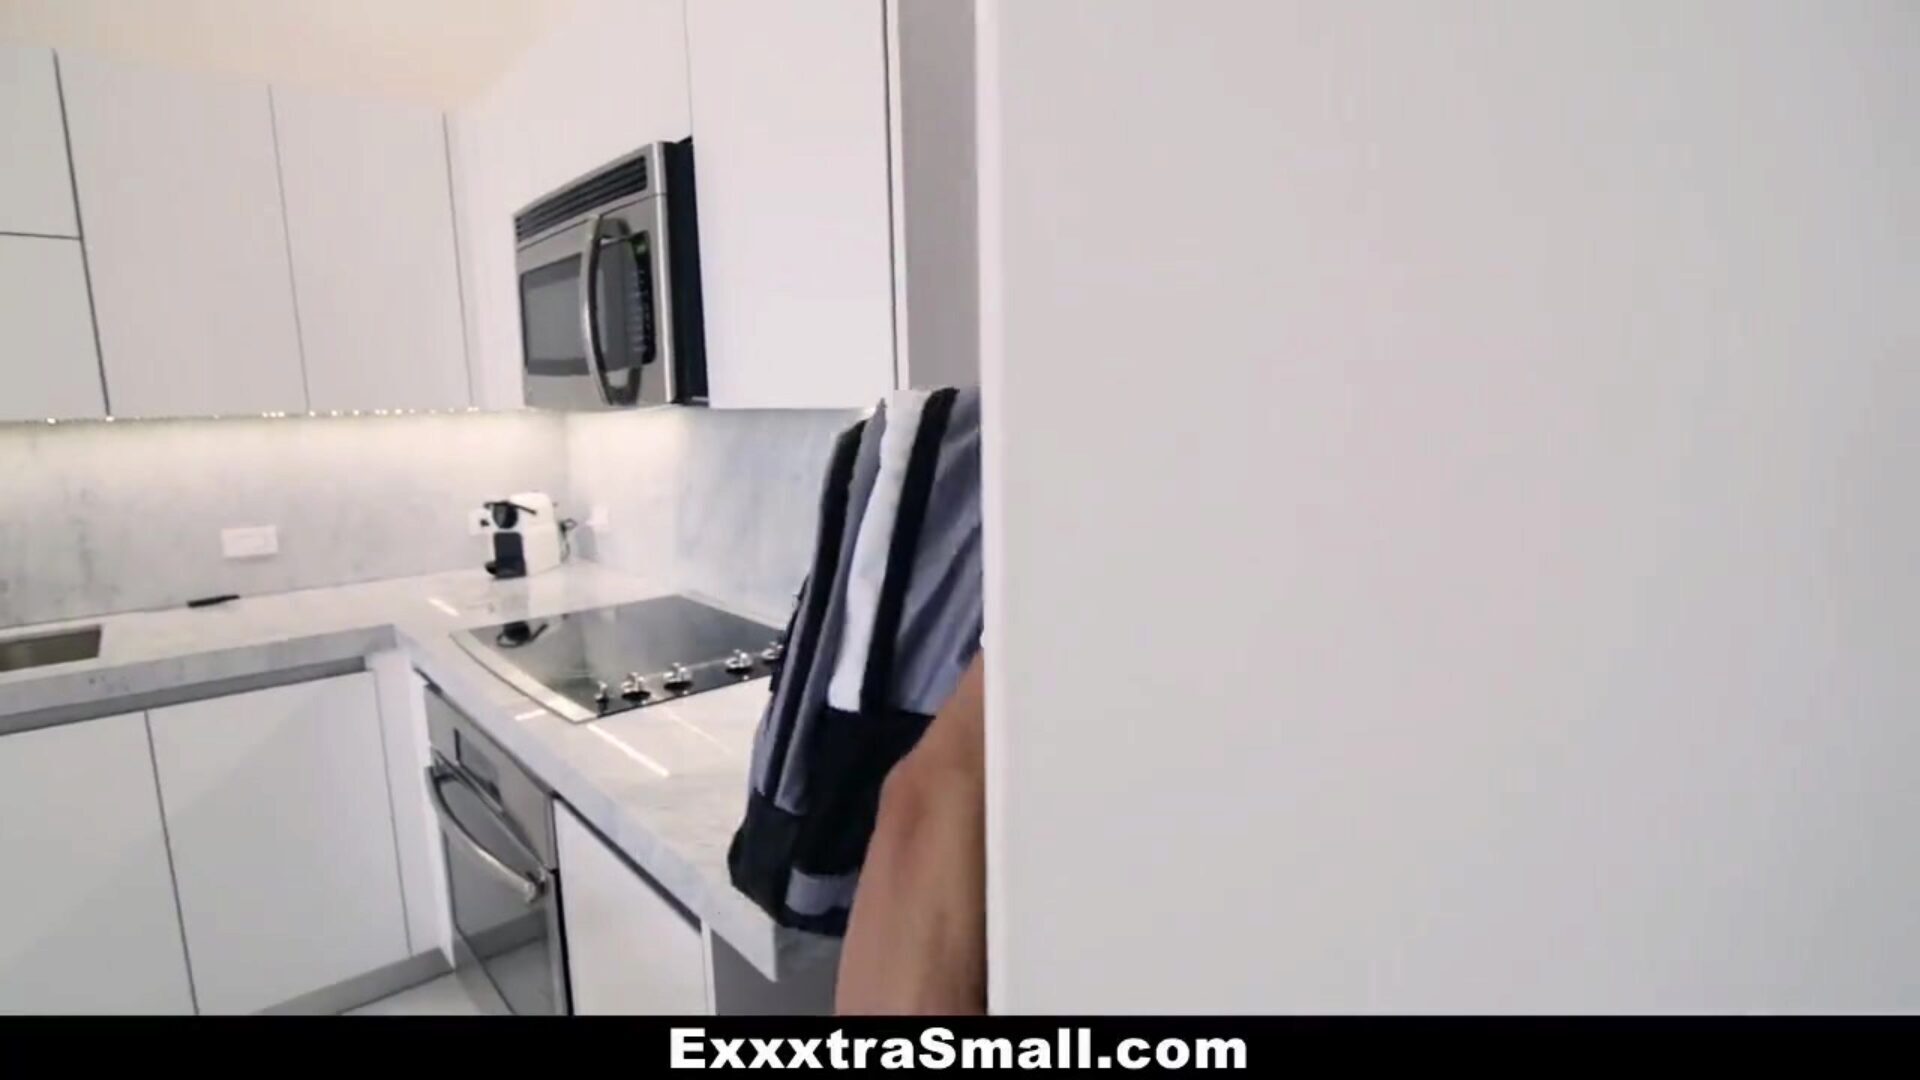 exxxtrasmall - jak złapać i przelecieć pikachu